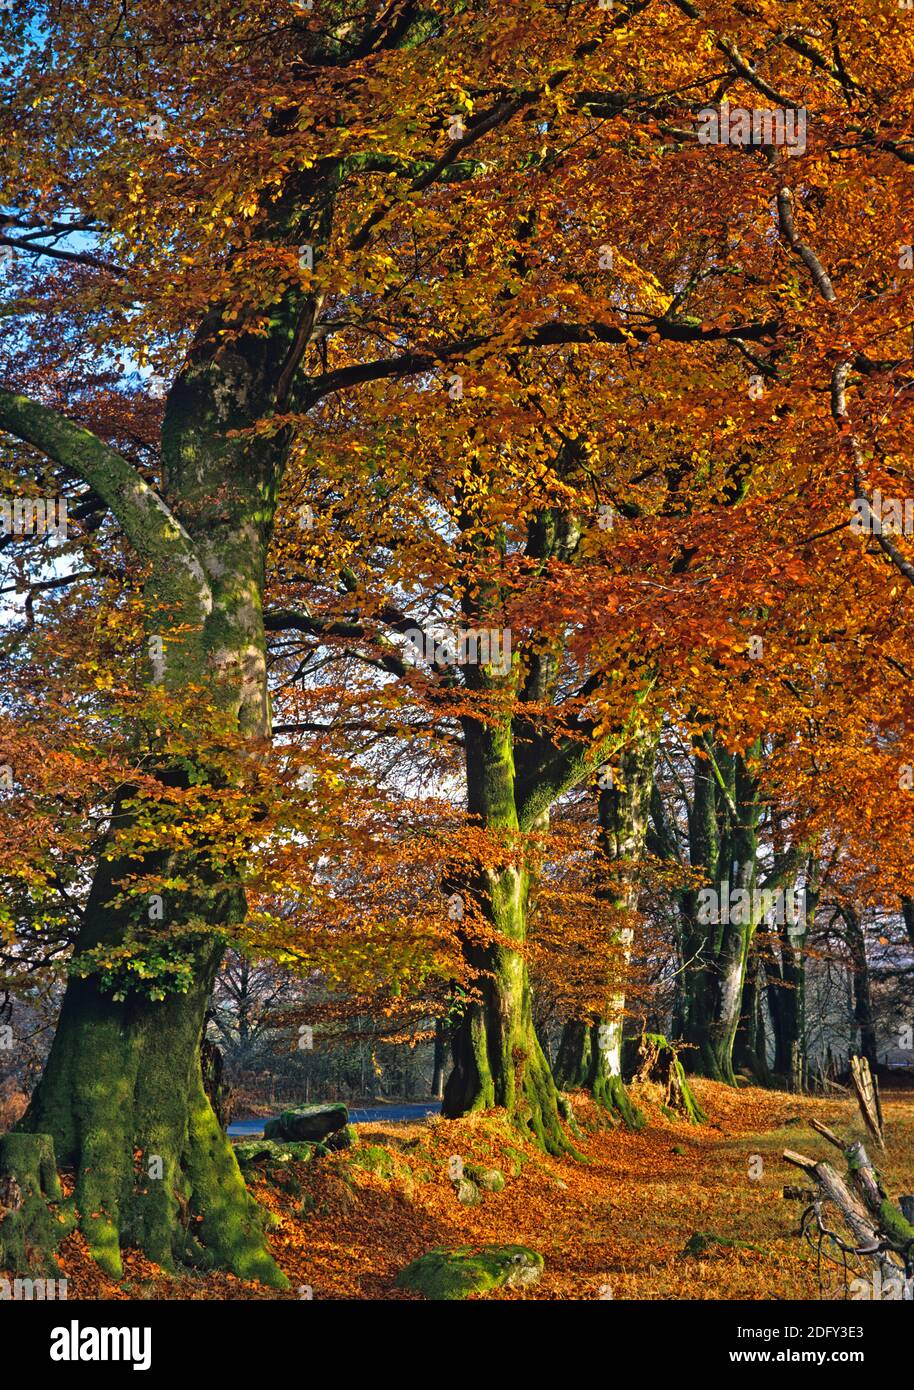 Avenida de los árboles en colores otoñales en un bosque inglés Foto de stock